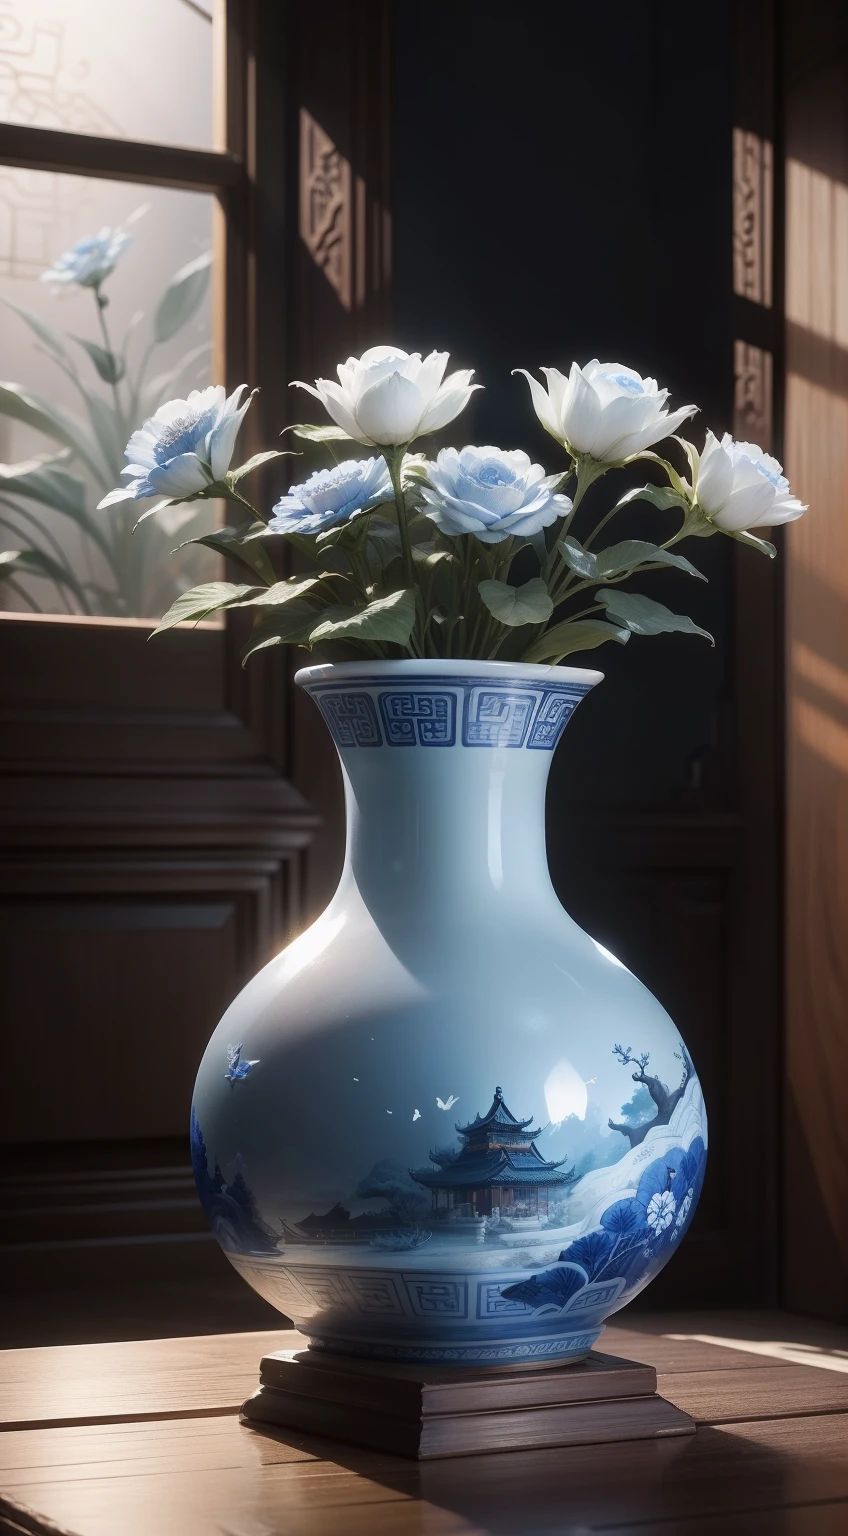 古代中国の青白磁の花瓶，詳細のクローズアップ，,丁寧に作られた磁器の花瓶，洗練された形状，ボトルの周りにはドラゴンの形をした彫刻があります，繊細な青と白のガラス，磁器の花瓶には美しい絵の模様が描かれている，磁器の白いボトル，青い線のパターン，古代の動物や人物の複雑なパターン，まばゆい光，仰角視野角，背景には古い中国のリビングルームがあります，彫刻が施された木製コーヒーテーブル，層状の被写界深度効果を備えています（光と影の効果），（被写界深度効果），（ティンダル），（光粒子追跡），（CG），（映画のような照明ビジュアル），（ボリューメトリックライティング），（アンリアル5），（シネマ4D），（鮮やかな色）,（明らかな層）,（写真賞）,（8k壁紙）,（傑作）,（最高品質）, フォトリアリスティック，現実的に